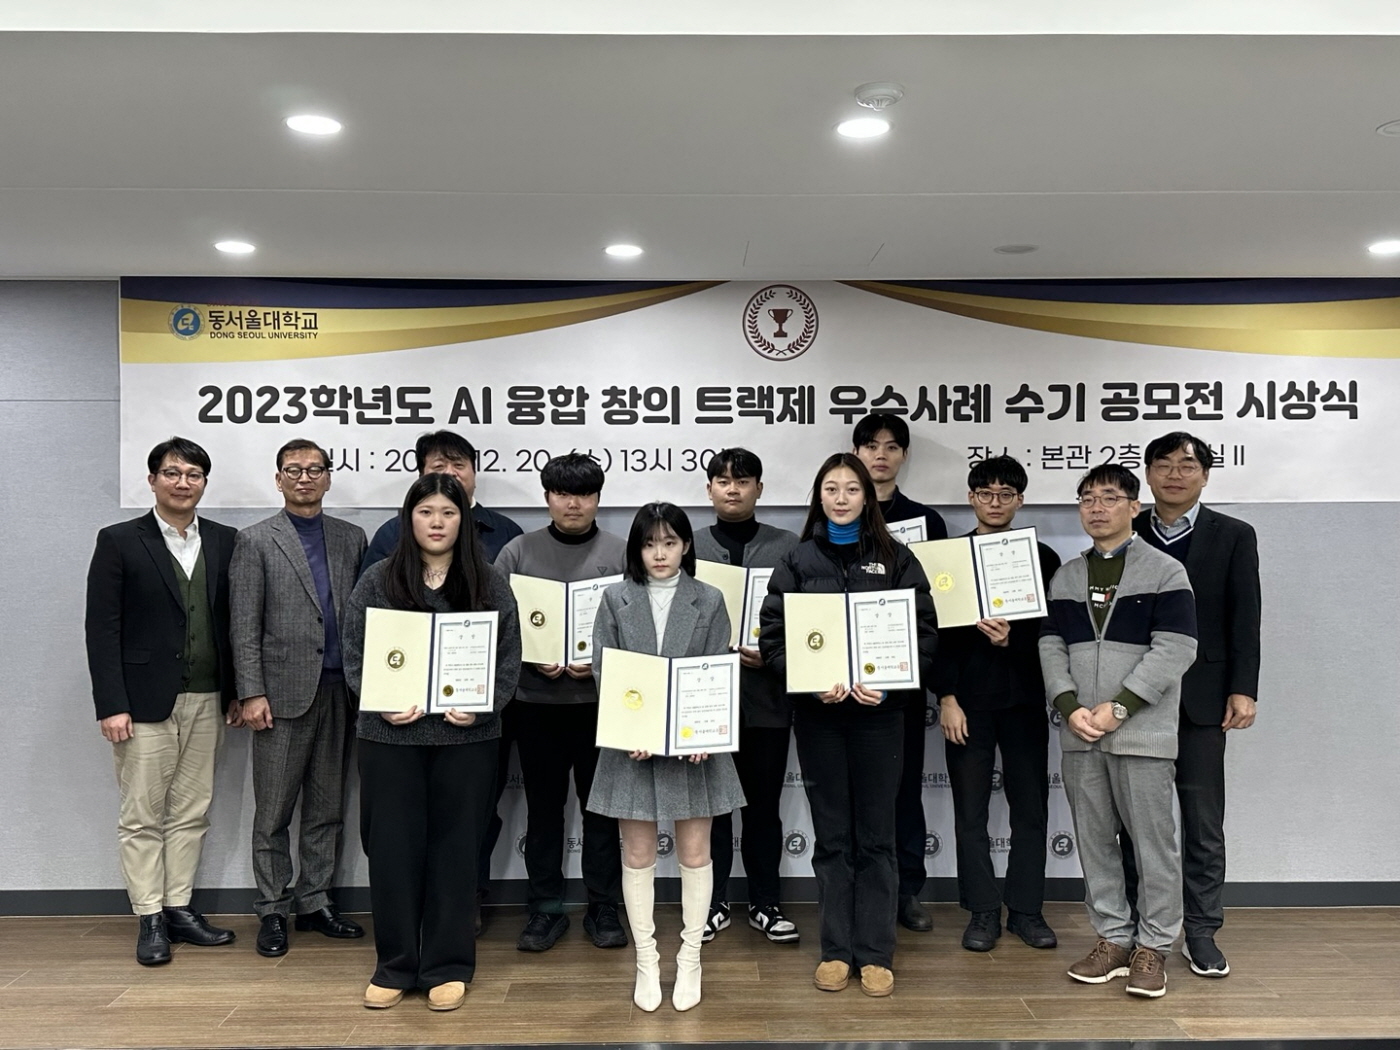  2023학년도 AI 융합 창의 트랙제 우수사례 수기공모 시상식 개최